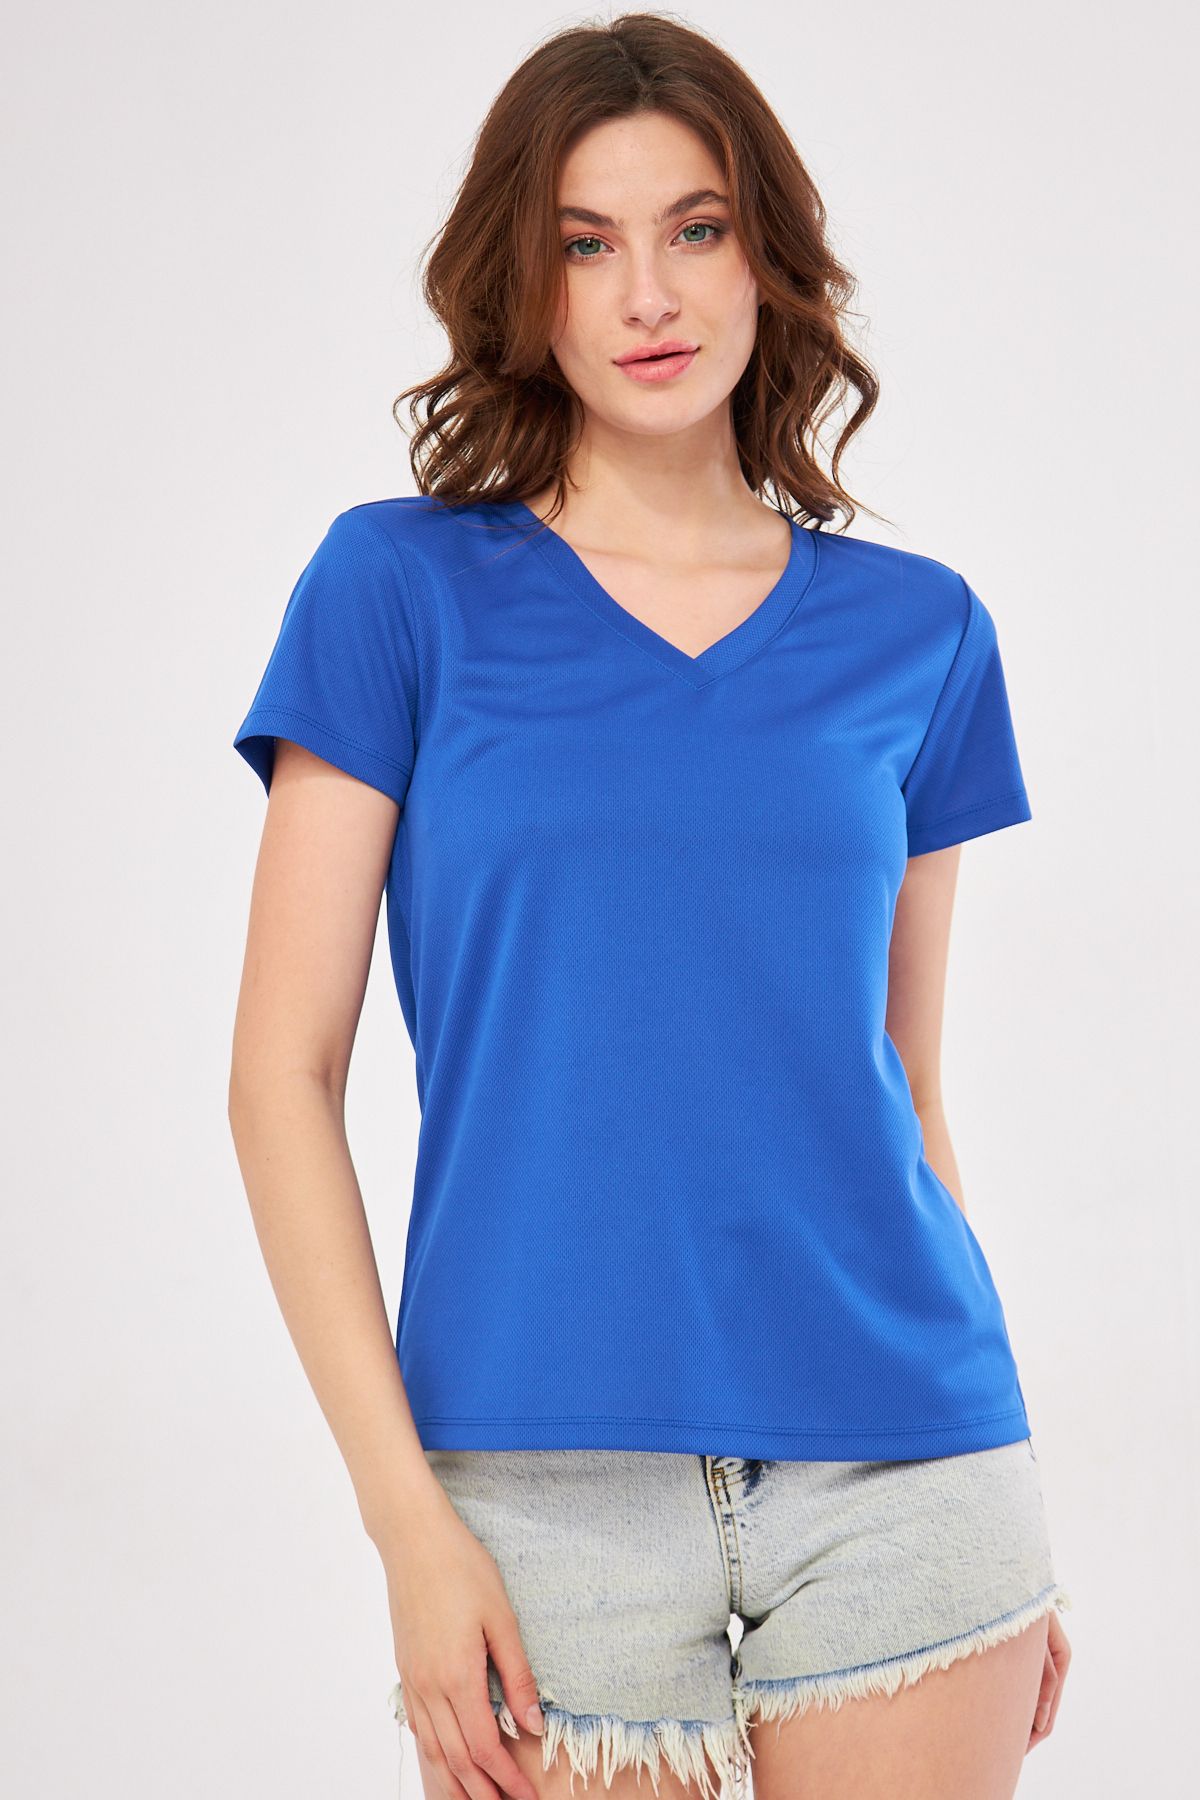 YÜKSEL IŞIK Spor T-shirt V Yaka Düz Saks Mavisi Renk